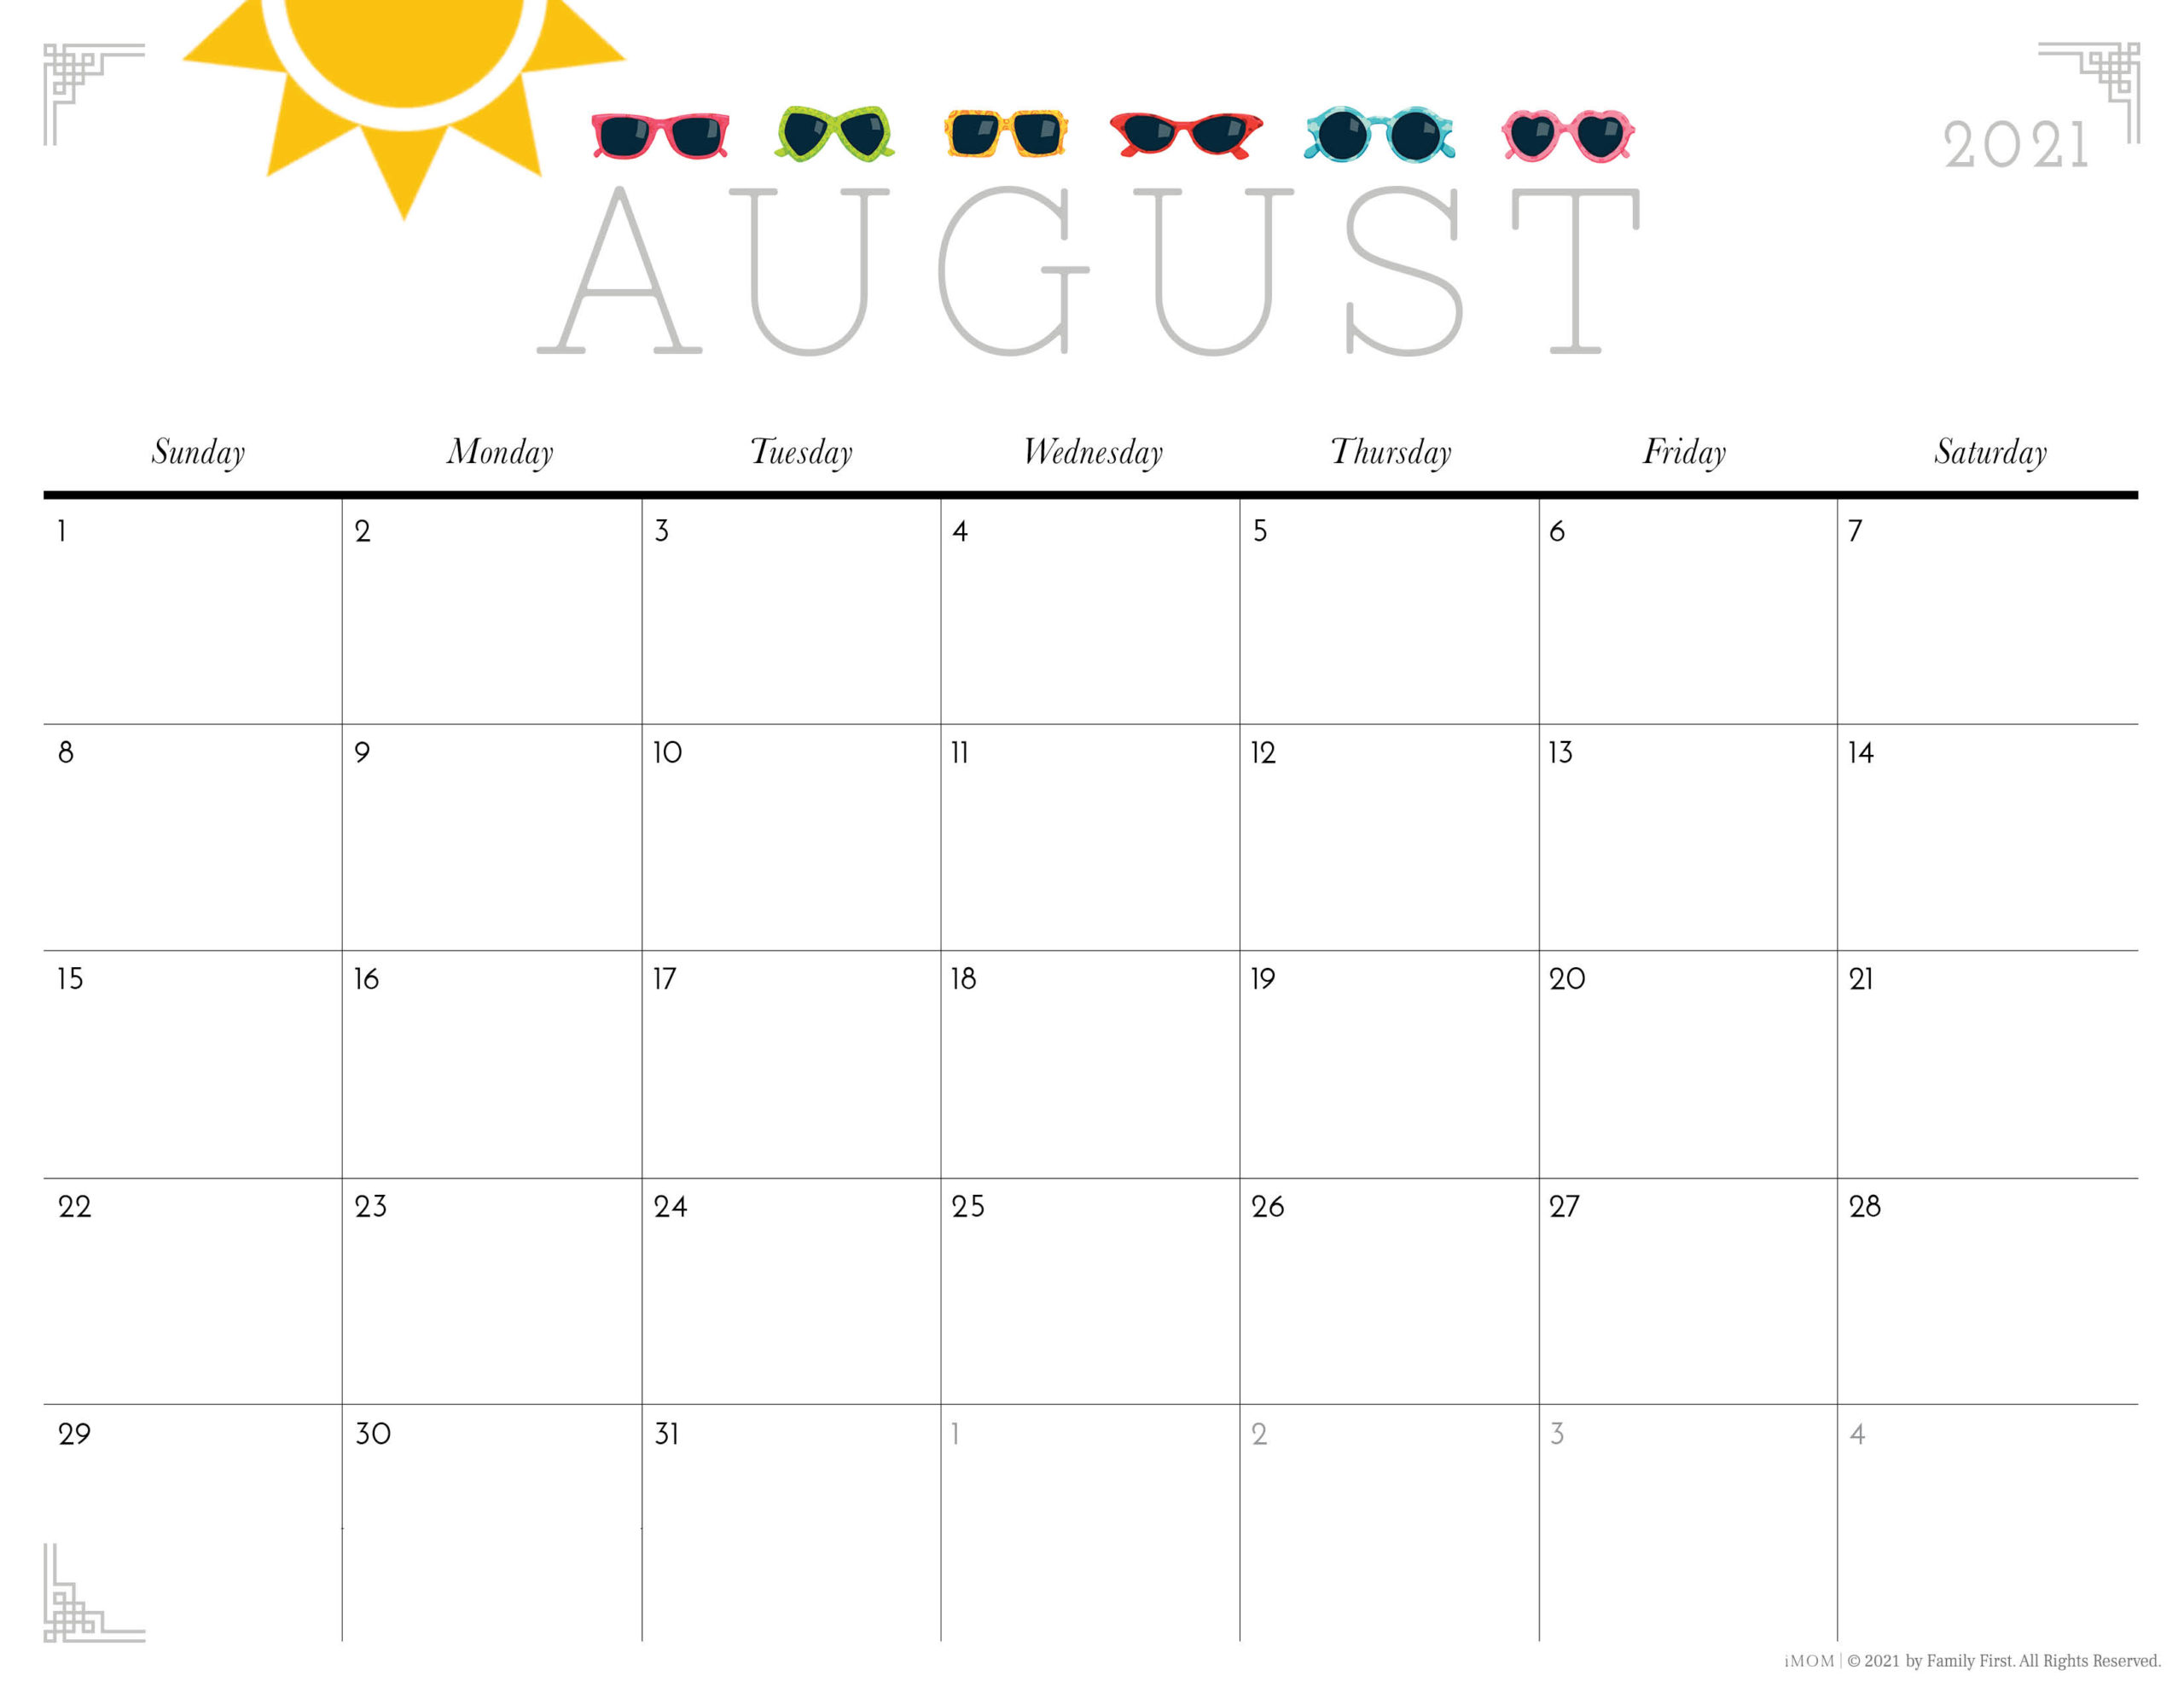 August 2021 calendar wallpapers